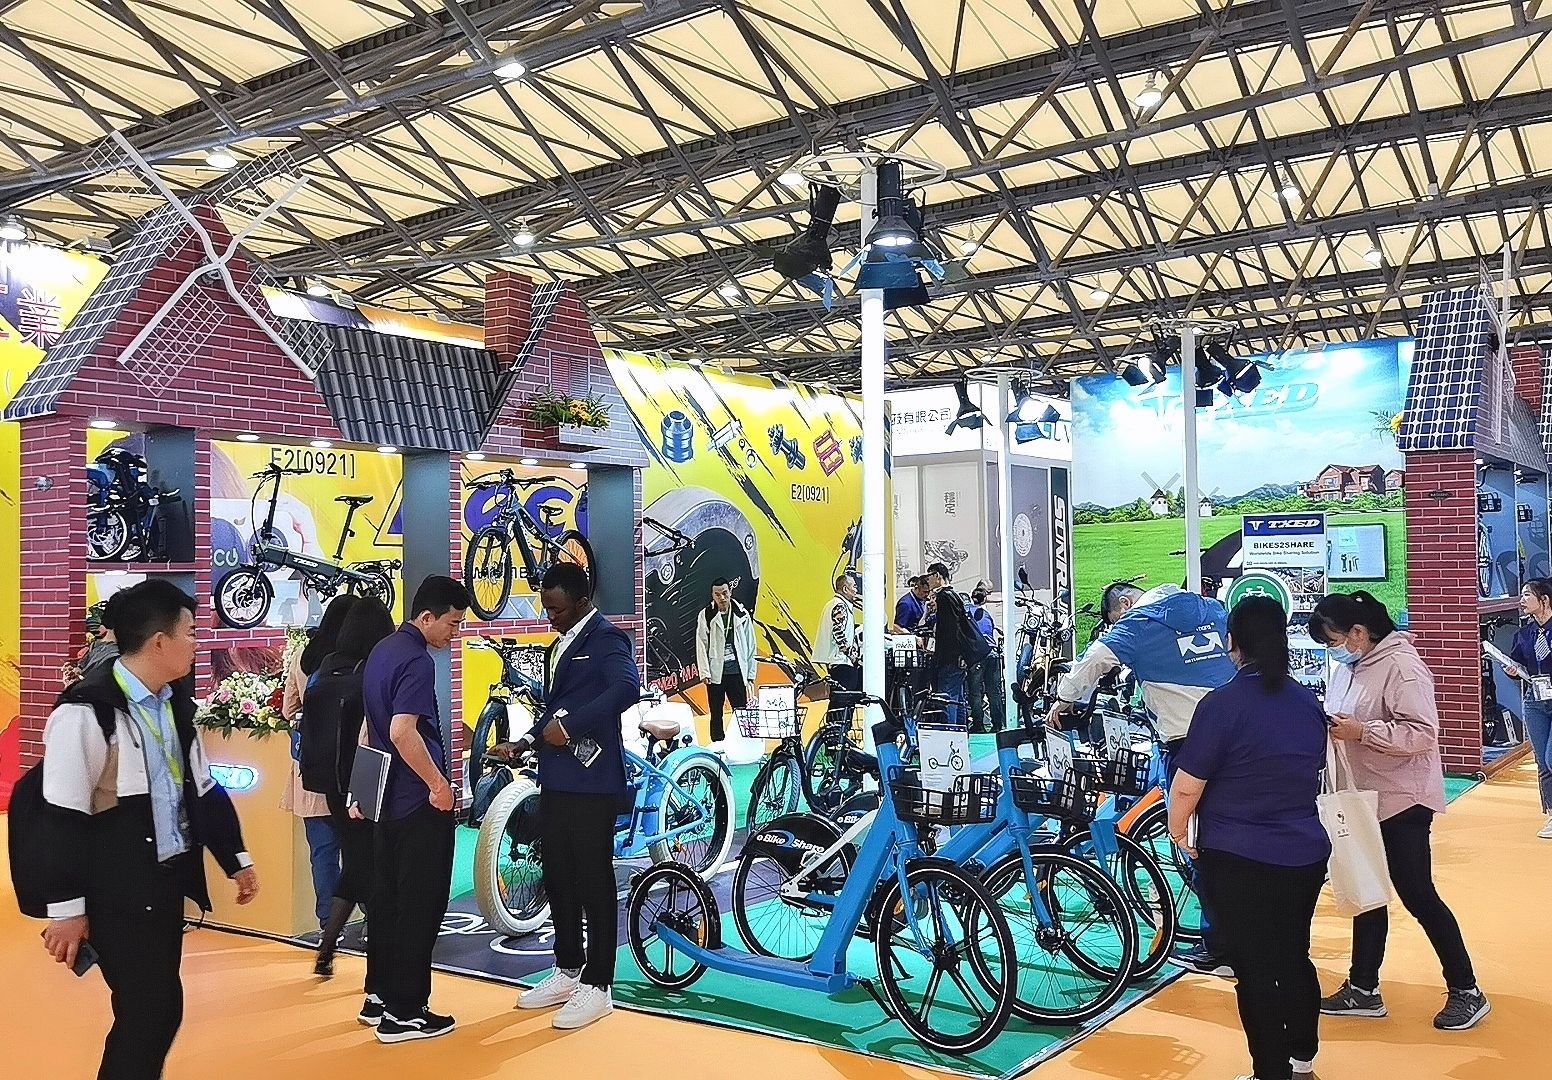 COTV全球直播-祥锦（天津）车业有限公司专业研发生产电动自行车、摩托型电动车及共享电动车产品，欢迎大家光临！